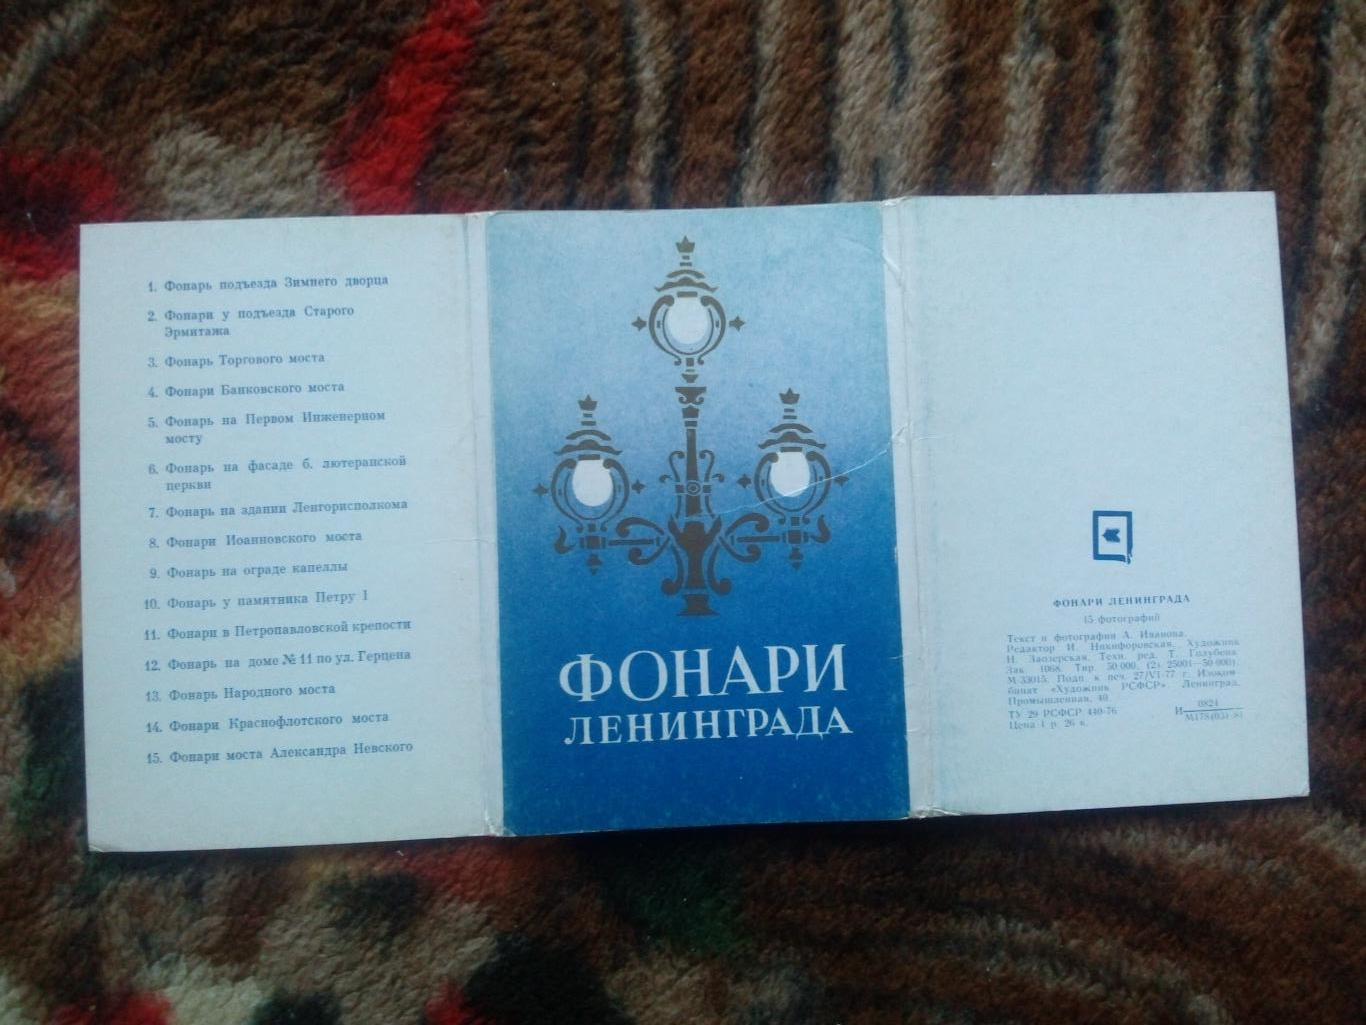 Фонари Ленинграда (Ленинград) 1977 г. полный набор - 15 открыток (чистые) 1